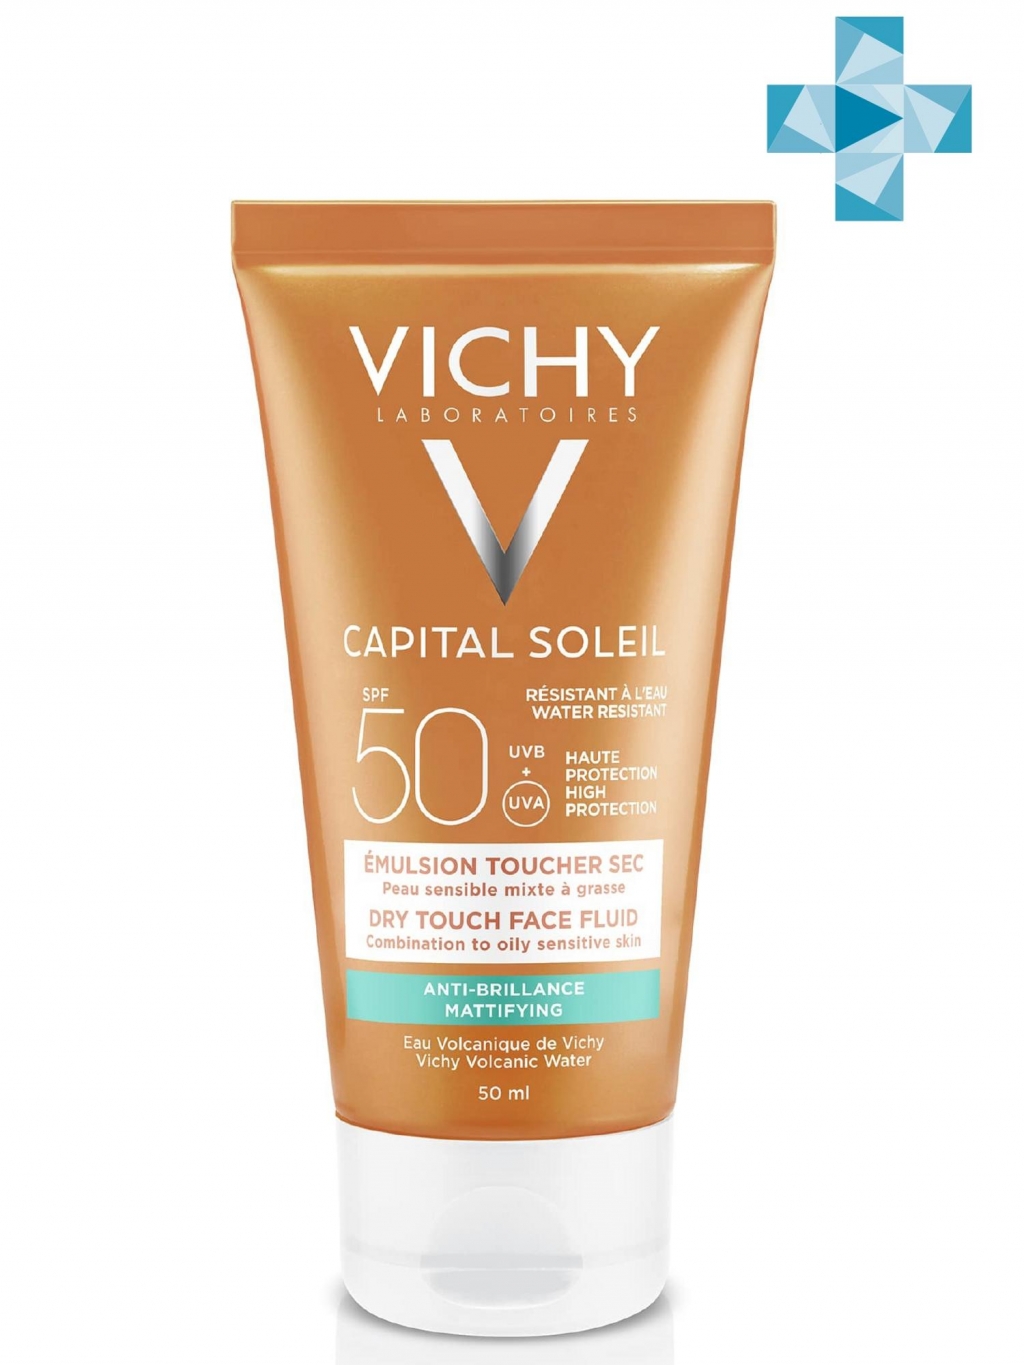 Vichy Солнцезащитная матирующая эмульсия Dry Touch для жирной кожи лица SPF 50, 50 мл (Vichy, Capital Ideal Soleil)